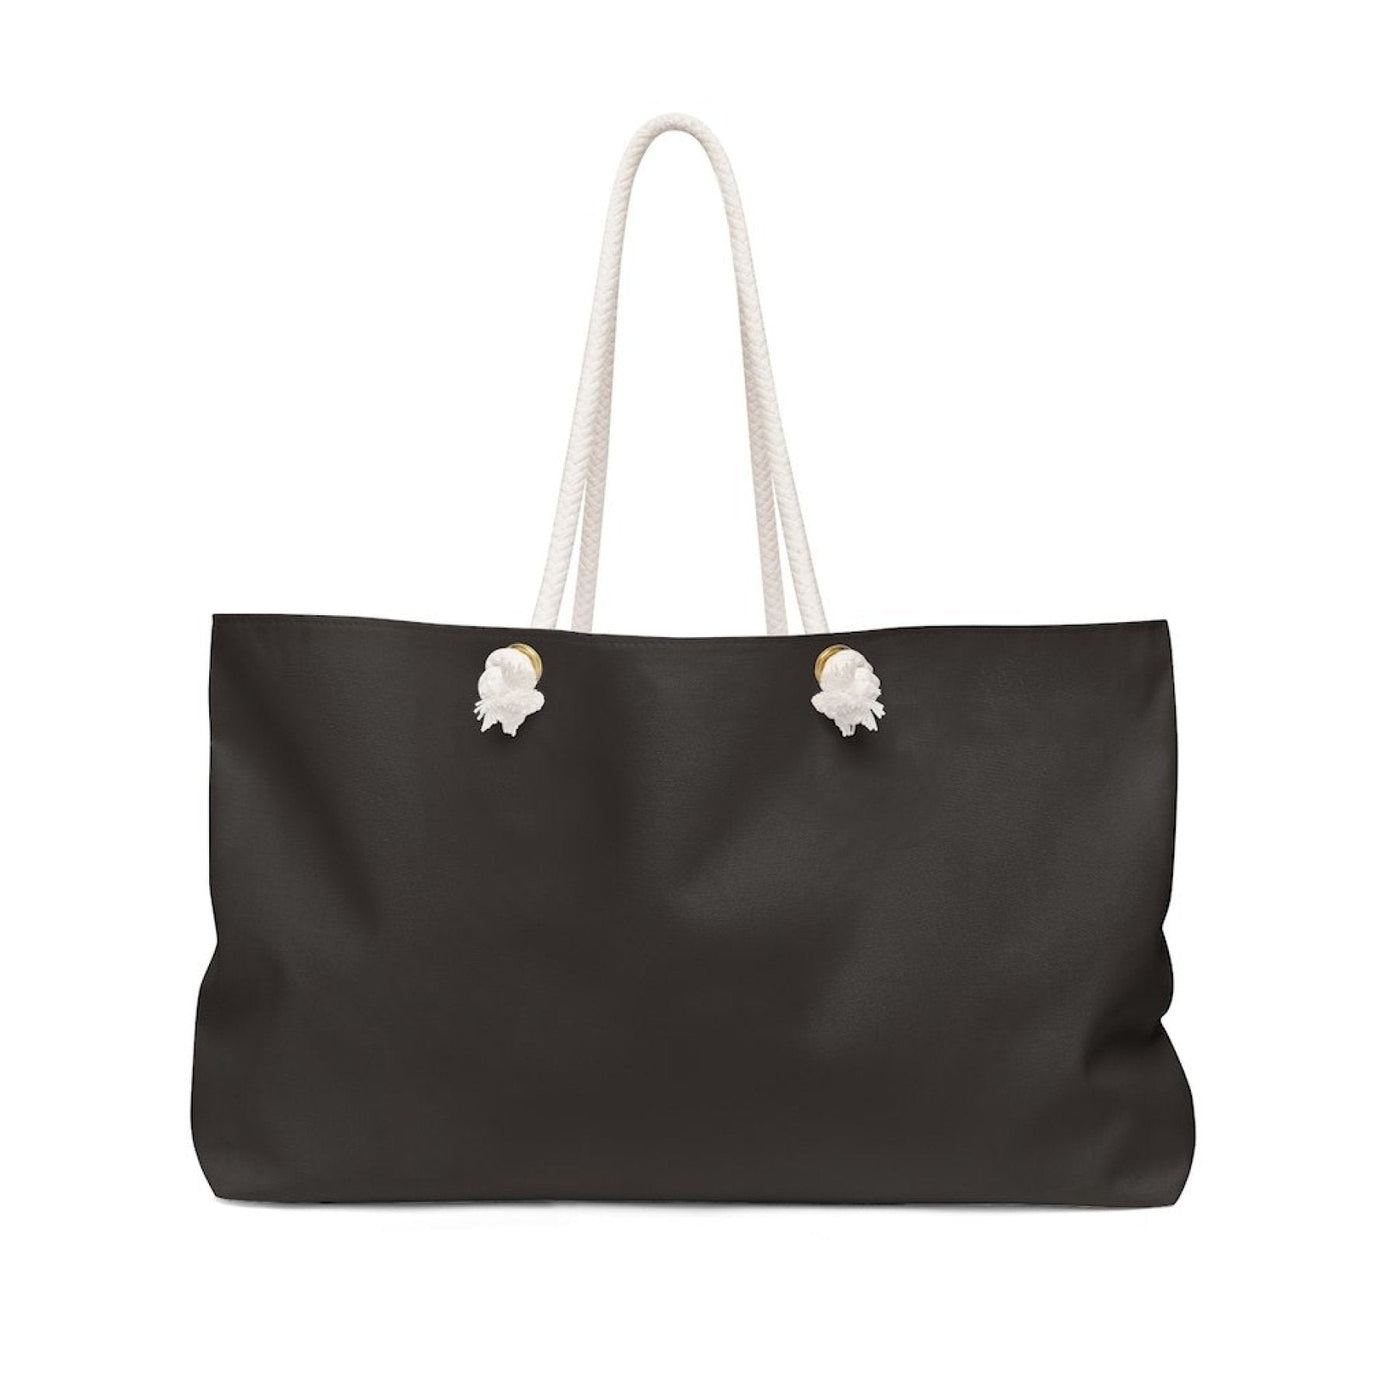 Weekender Tote Bag Dark Brown - Bags | Tote Bags | Weekender